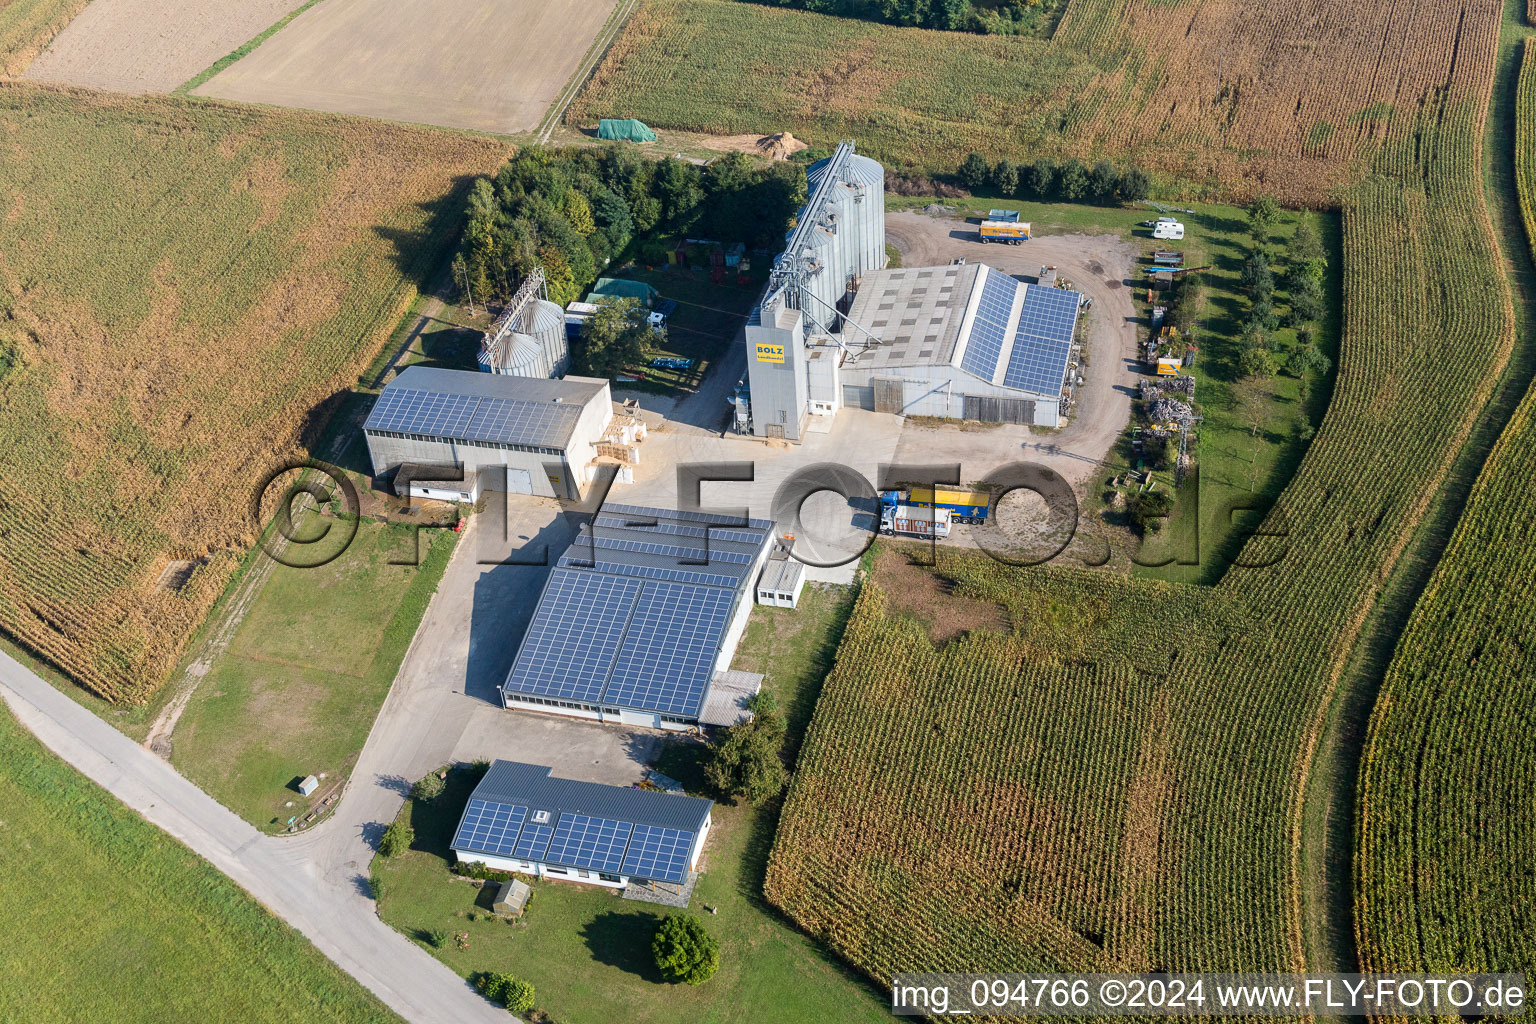 Vue aérienne de Propriété d'une ferme de Bolz Landhandel GmbH dans le quartier Liedolsheim de Dettenheim à Liedolsheim dans le département Bade-Wurtemberg, Allemagne